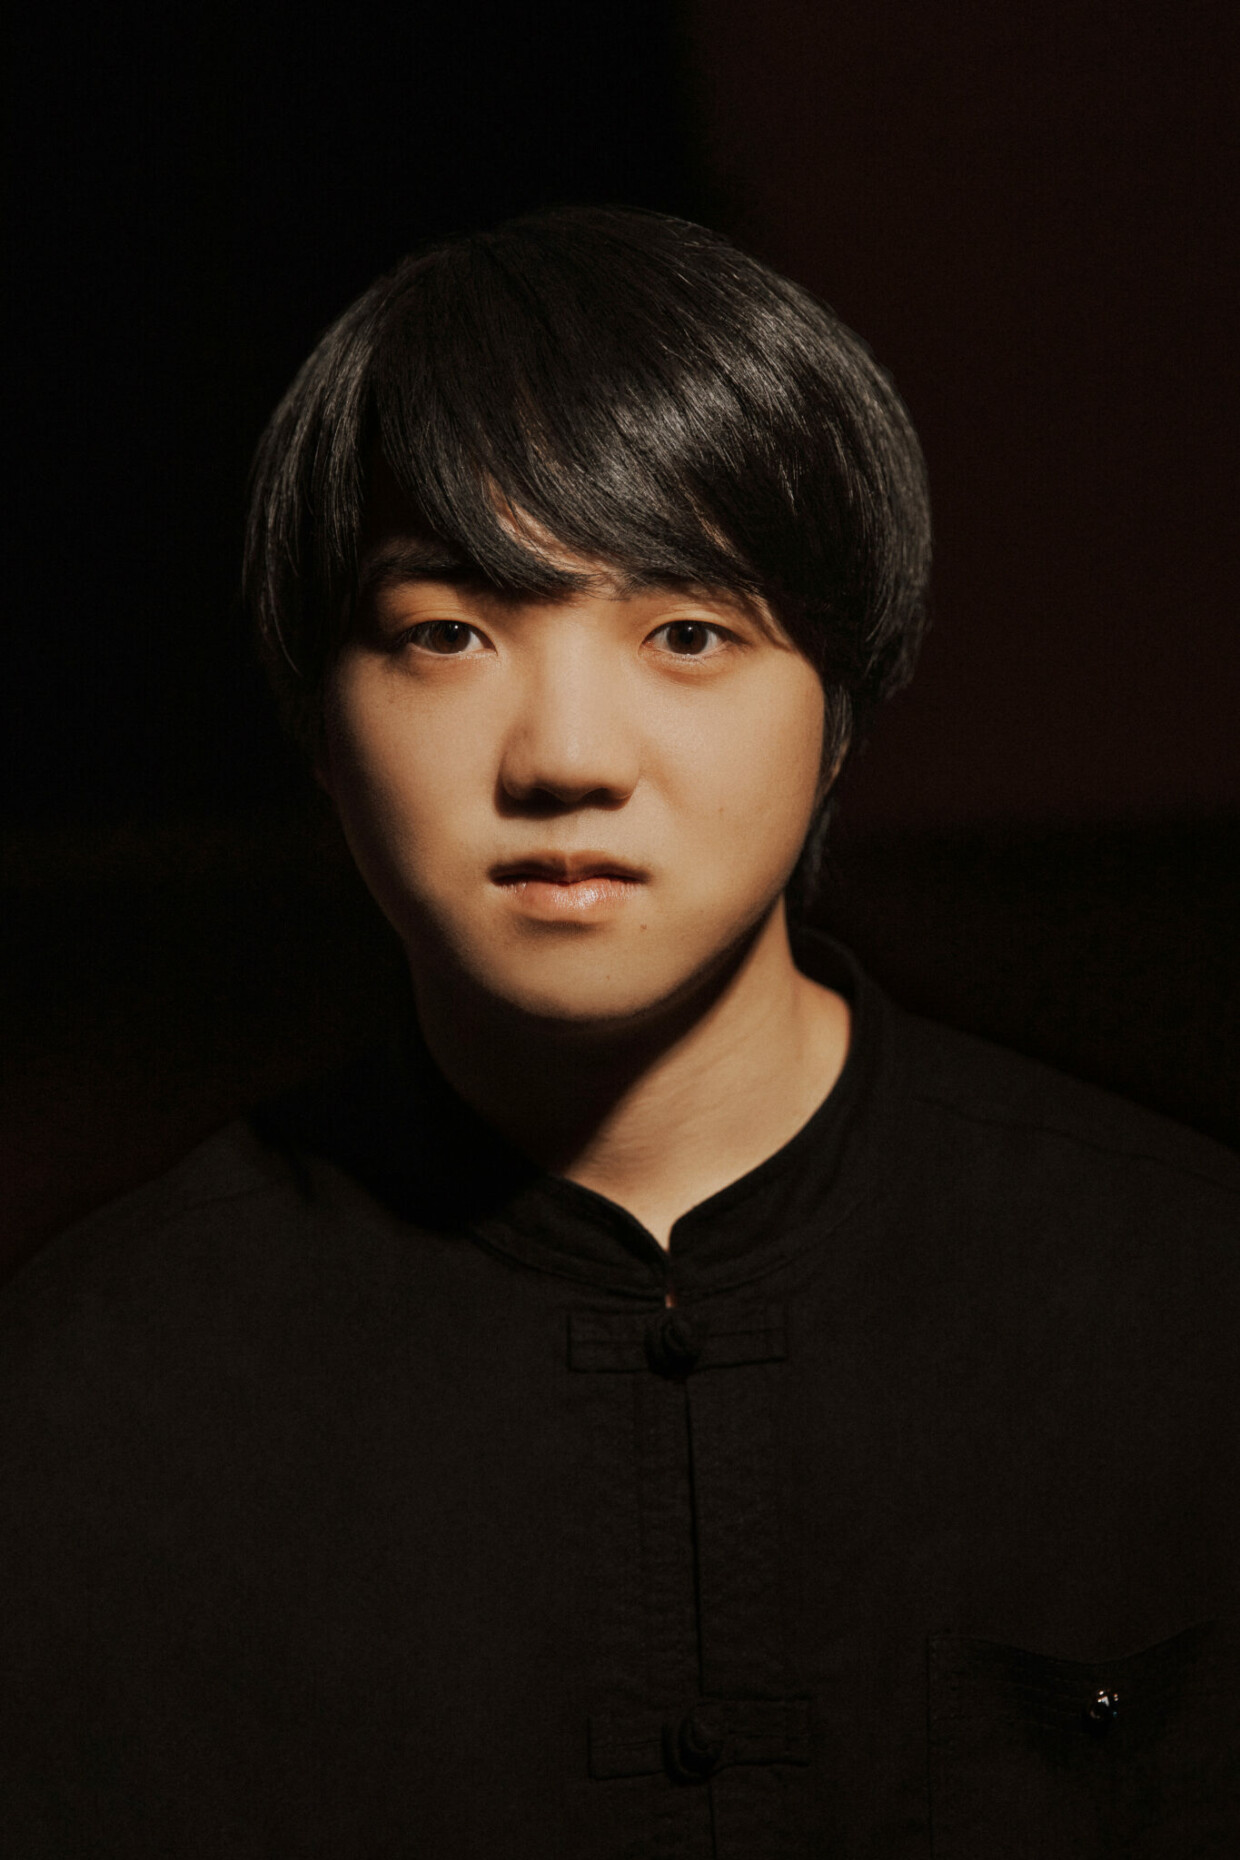 Mao Fujita gehört zu den hochdekorierten Nachwuchspianisten seiner Generation